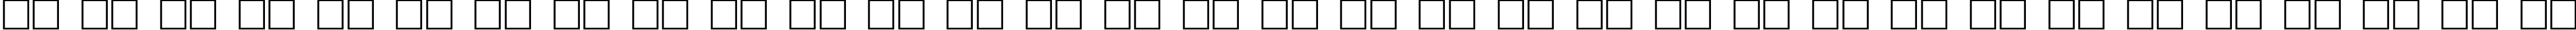 Пример написания русского алфавита шрифтом ACCELERATOR